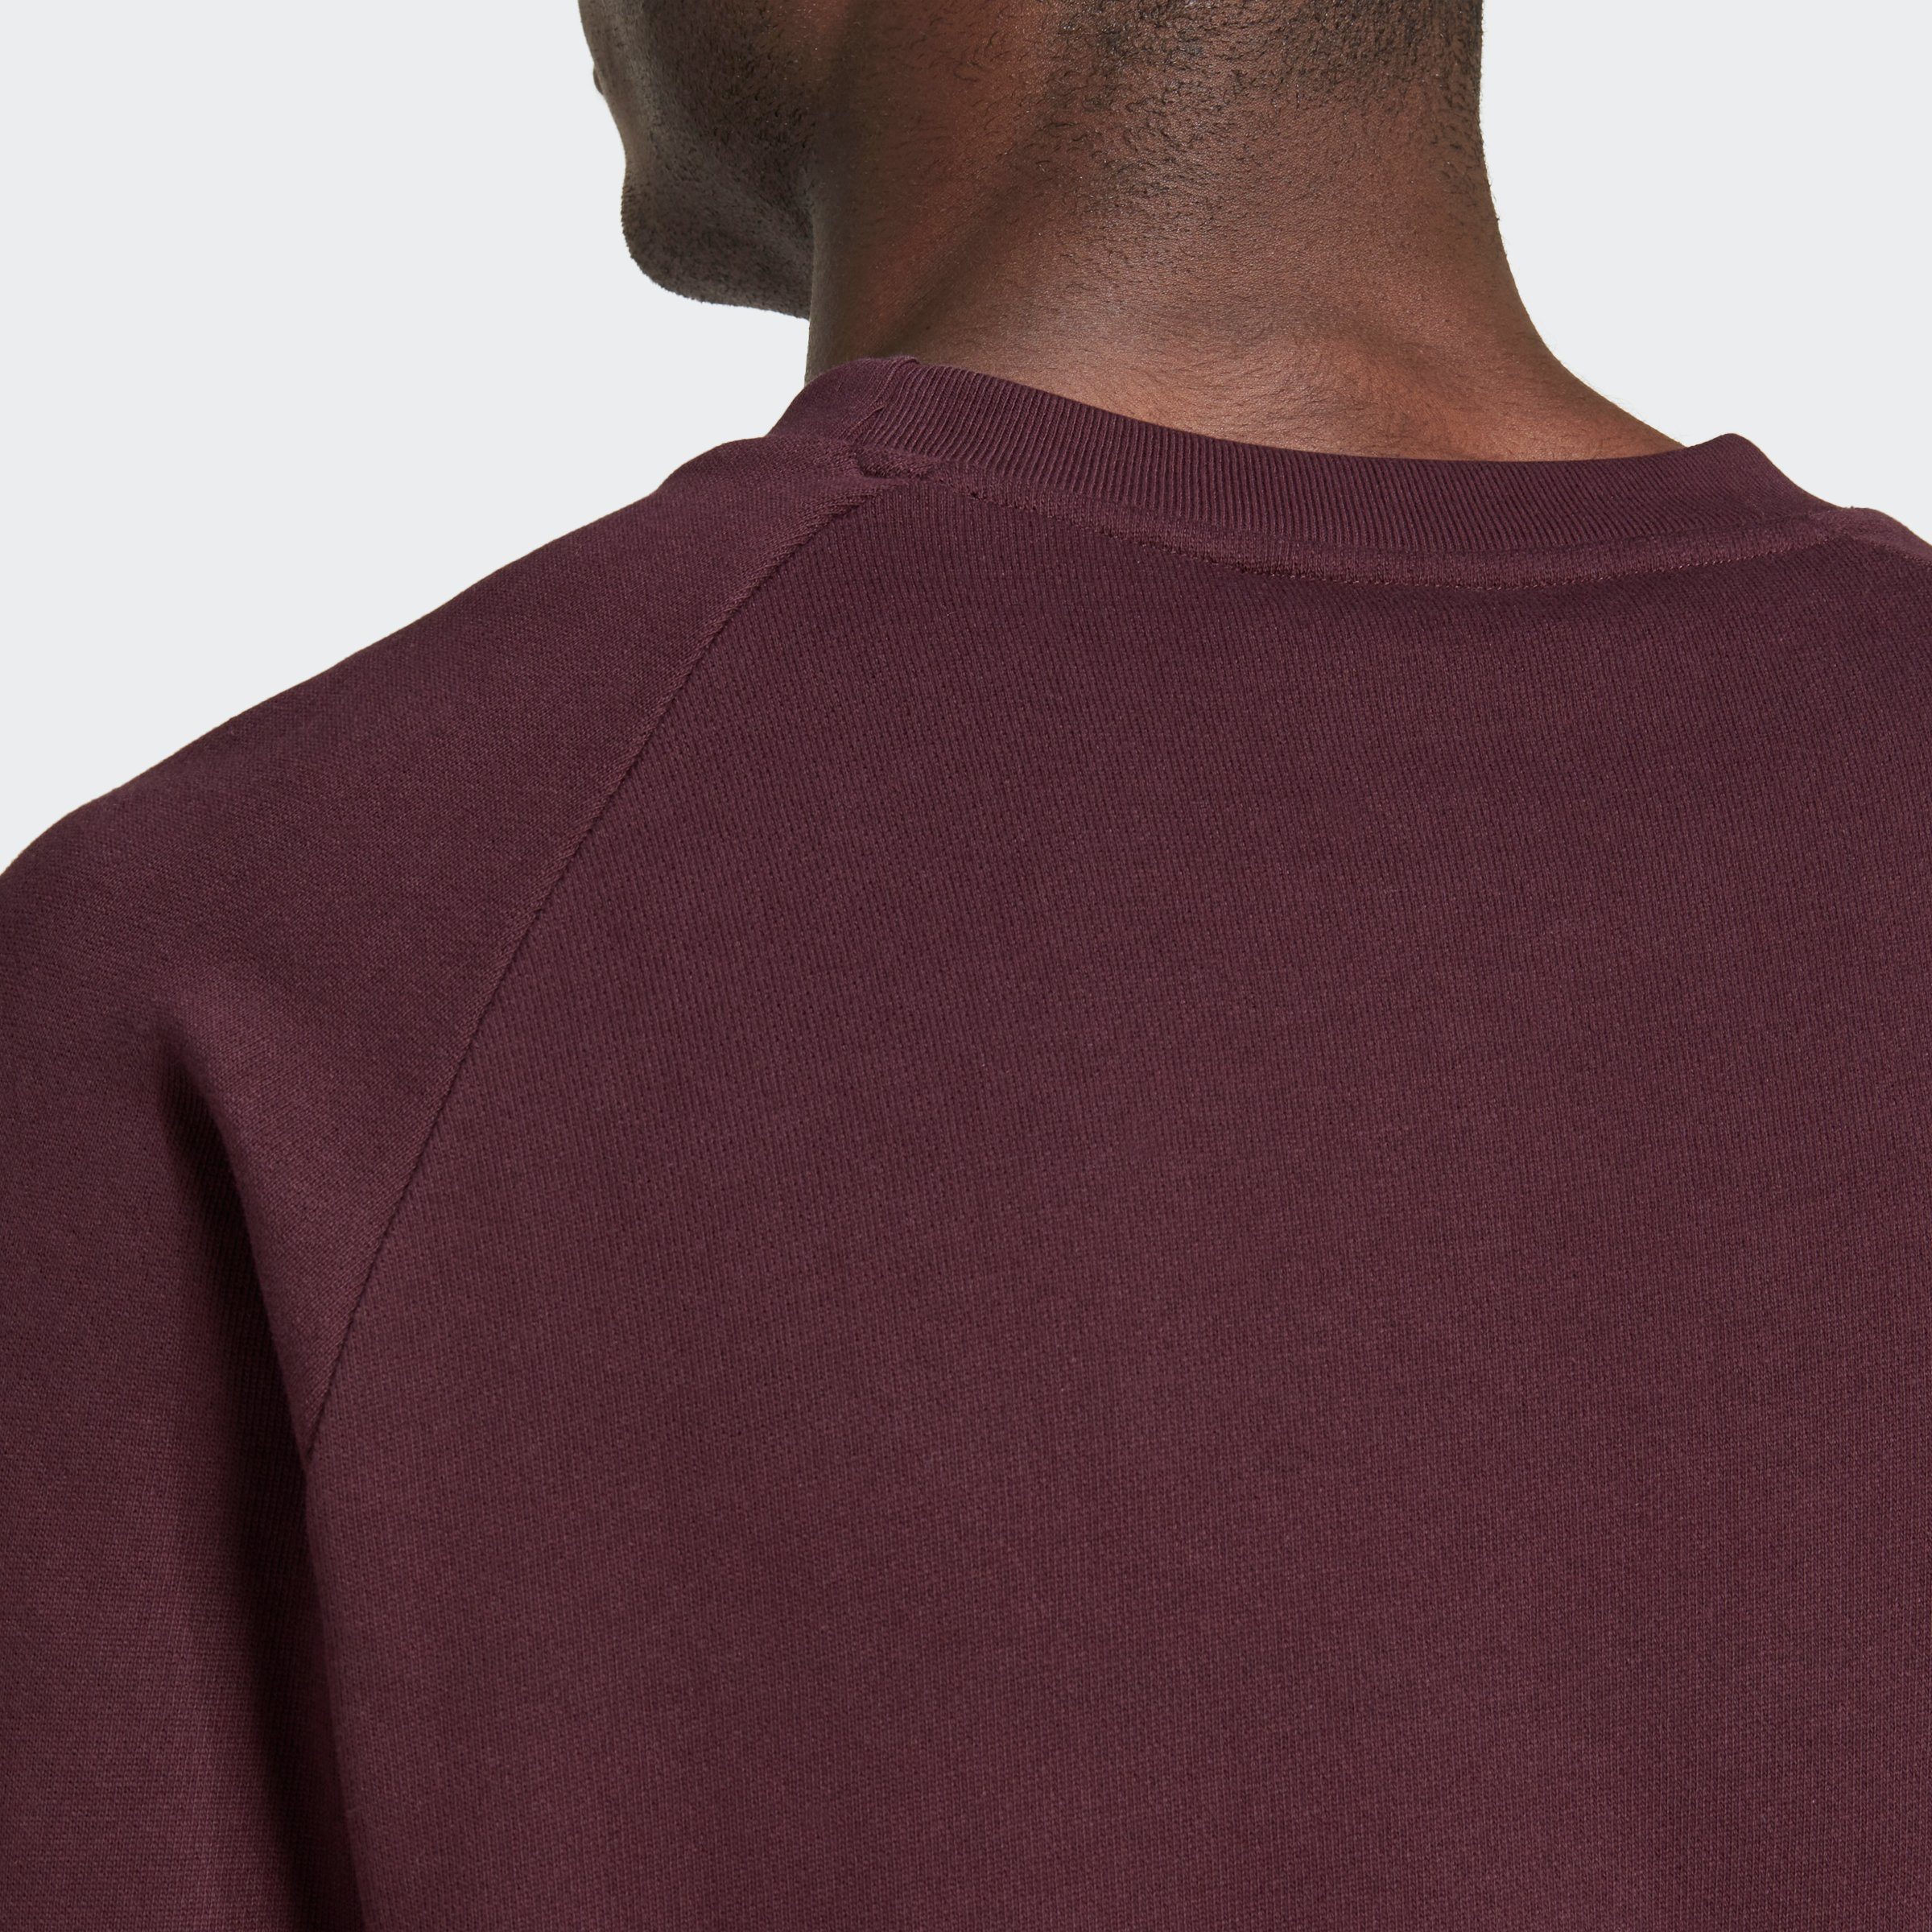 Sweatshirt SHAMAR CLASSICS ADICOLOR TREFOIL Originals adidas